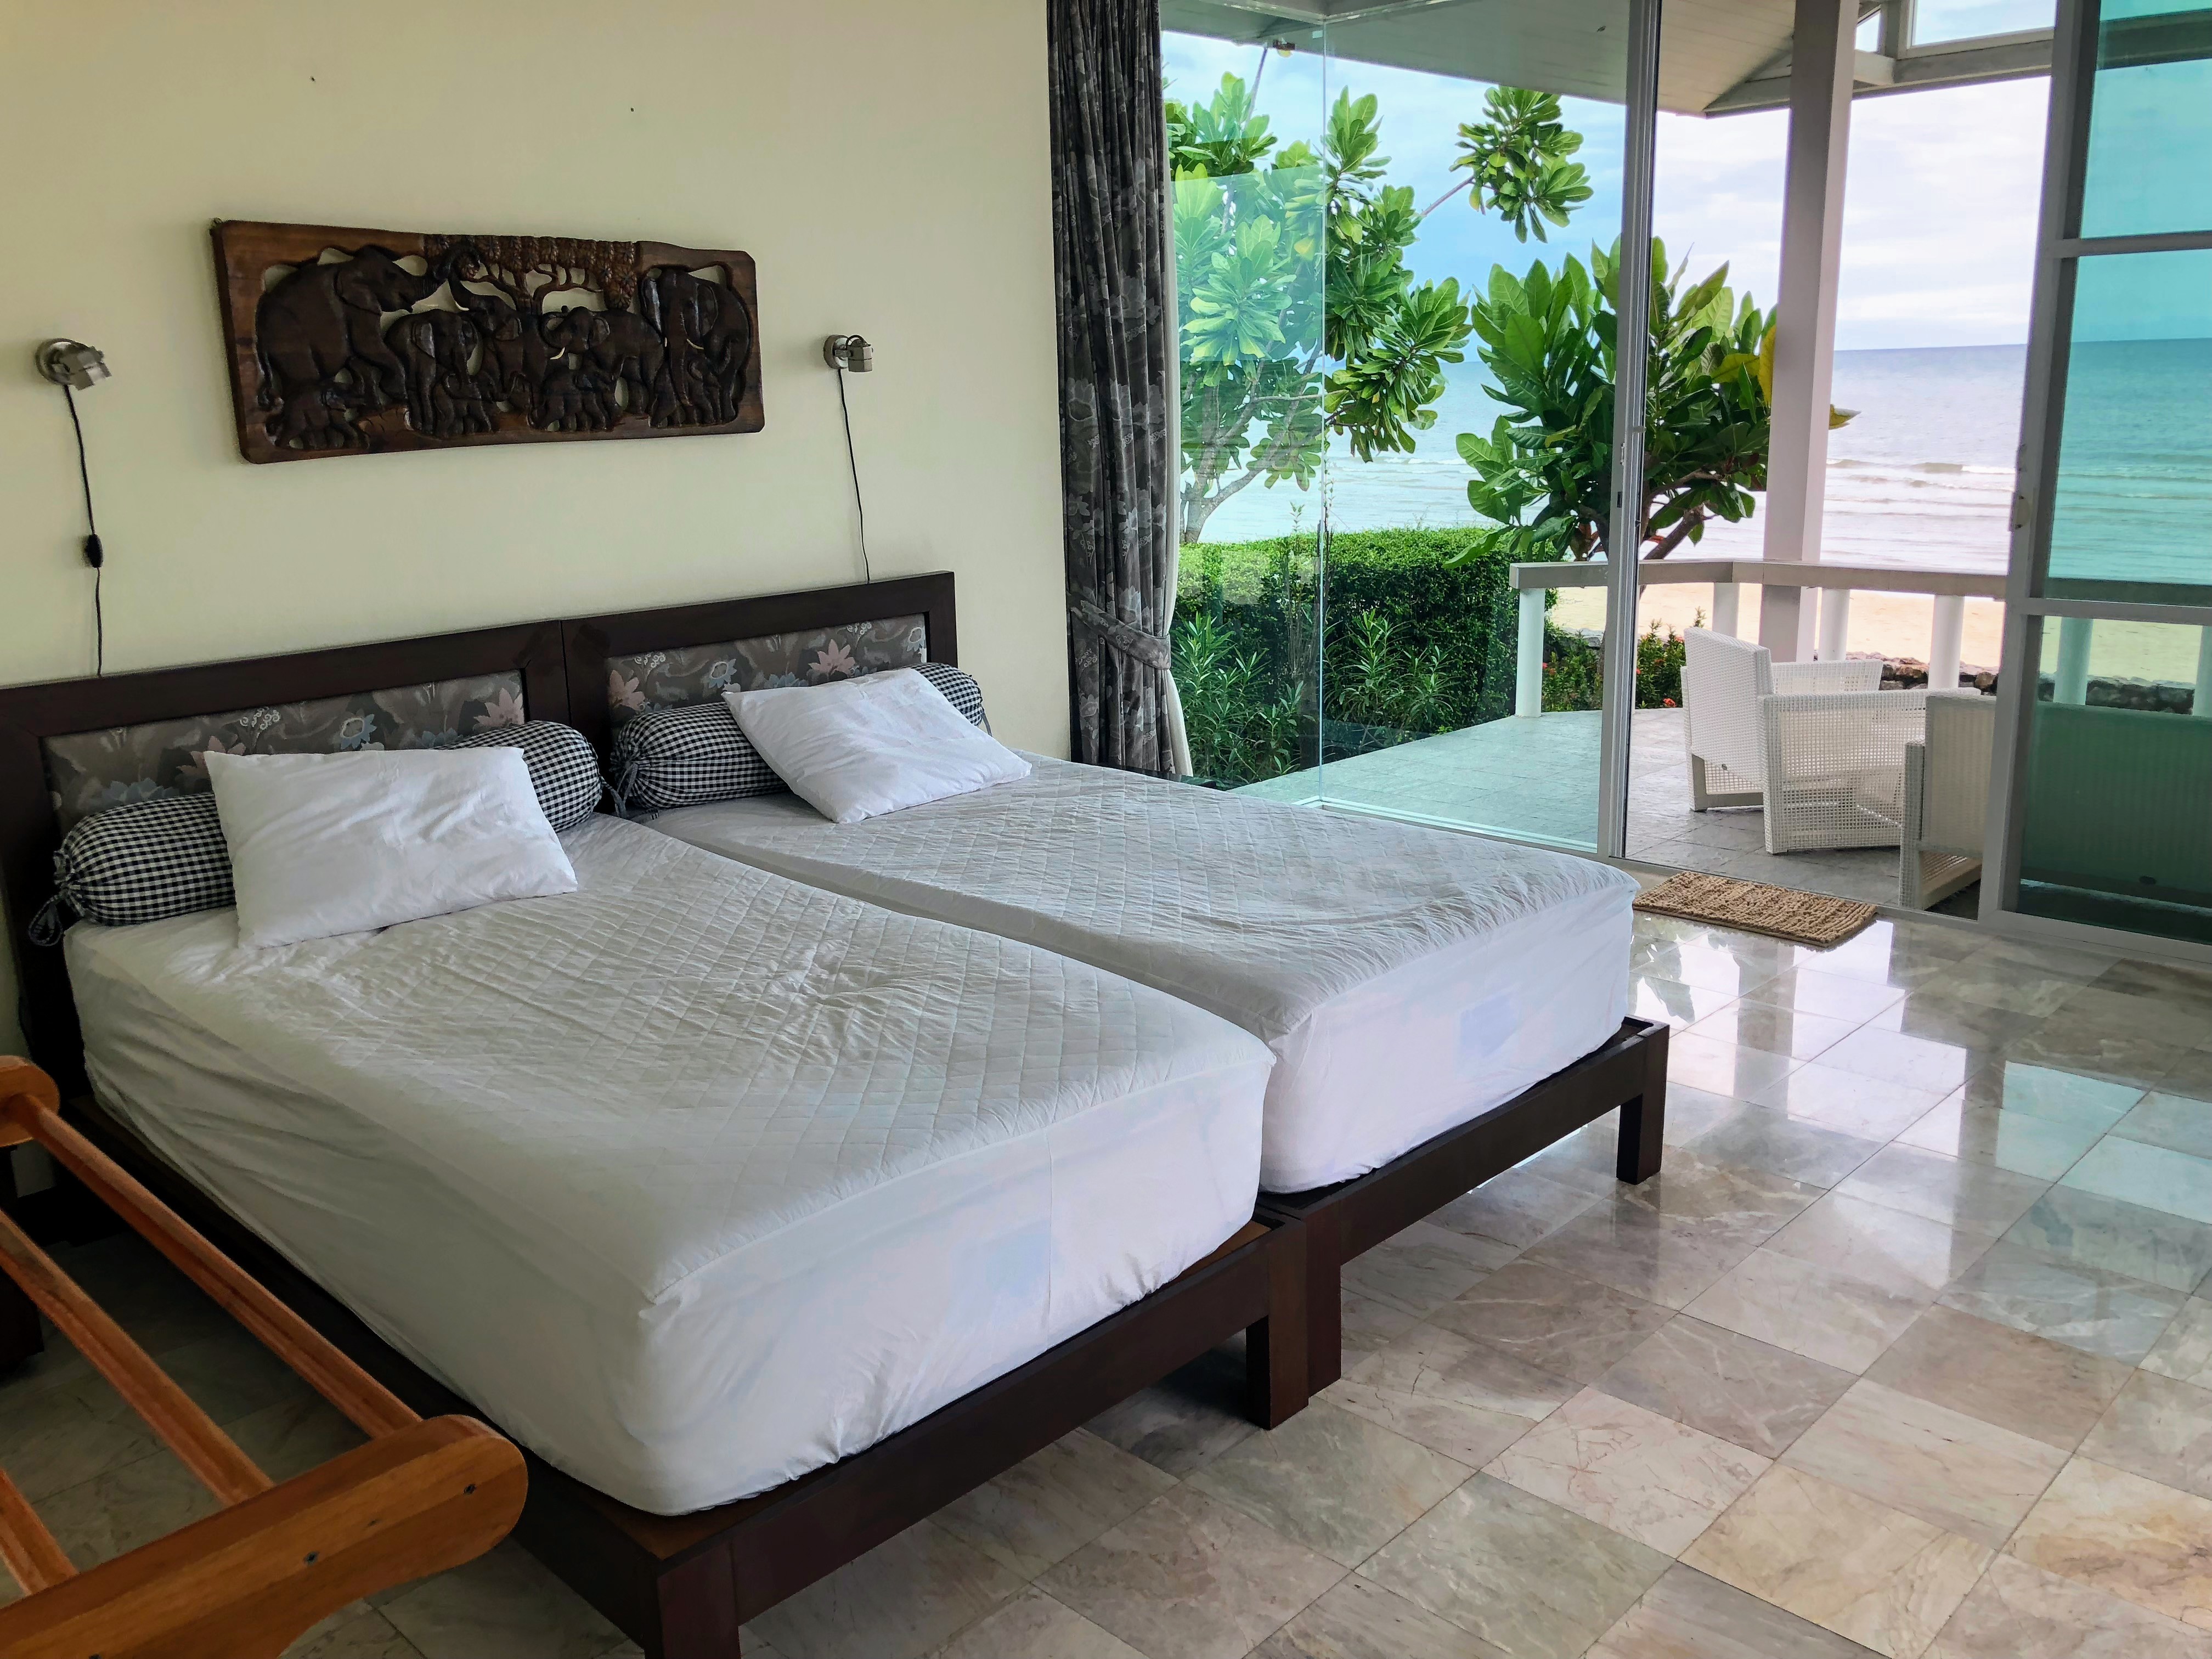 Master bedroom, två sängar som går att dra ihop eller isär. Hög kvalité på madrass och bäddmadrass. Foto från sommaren 2018.